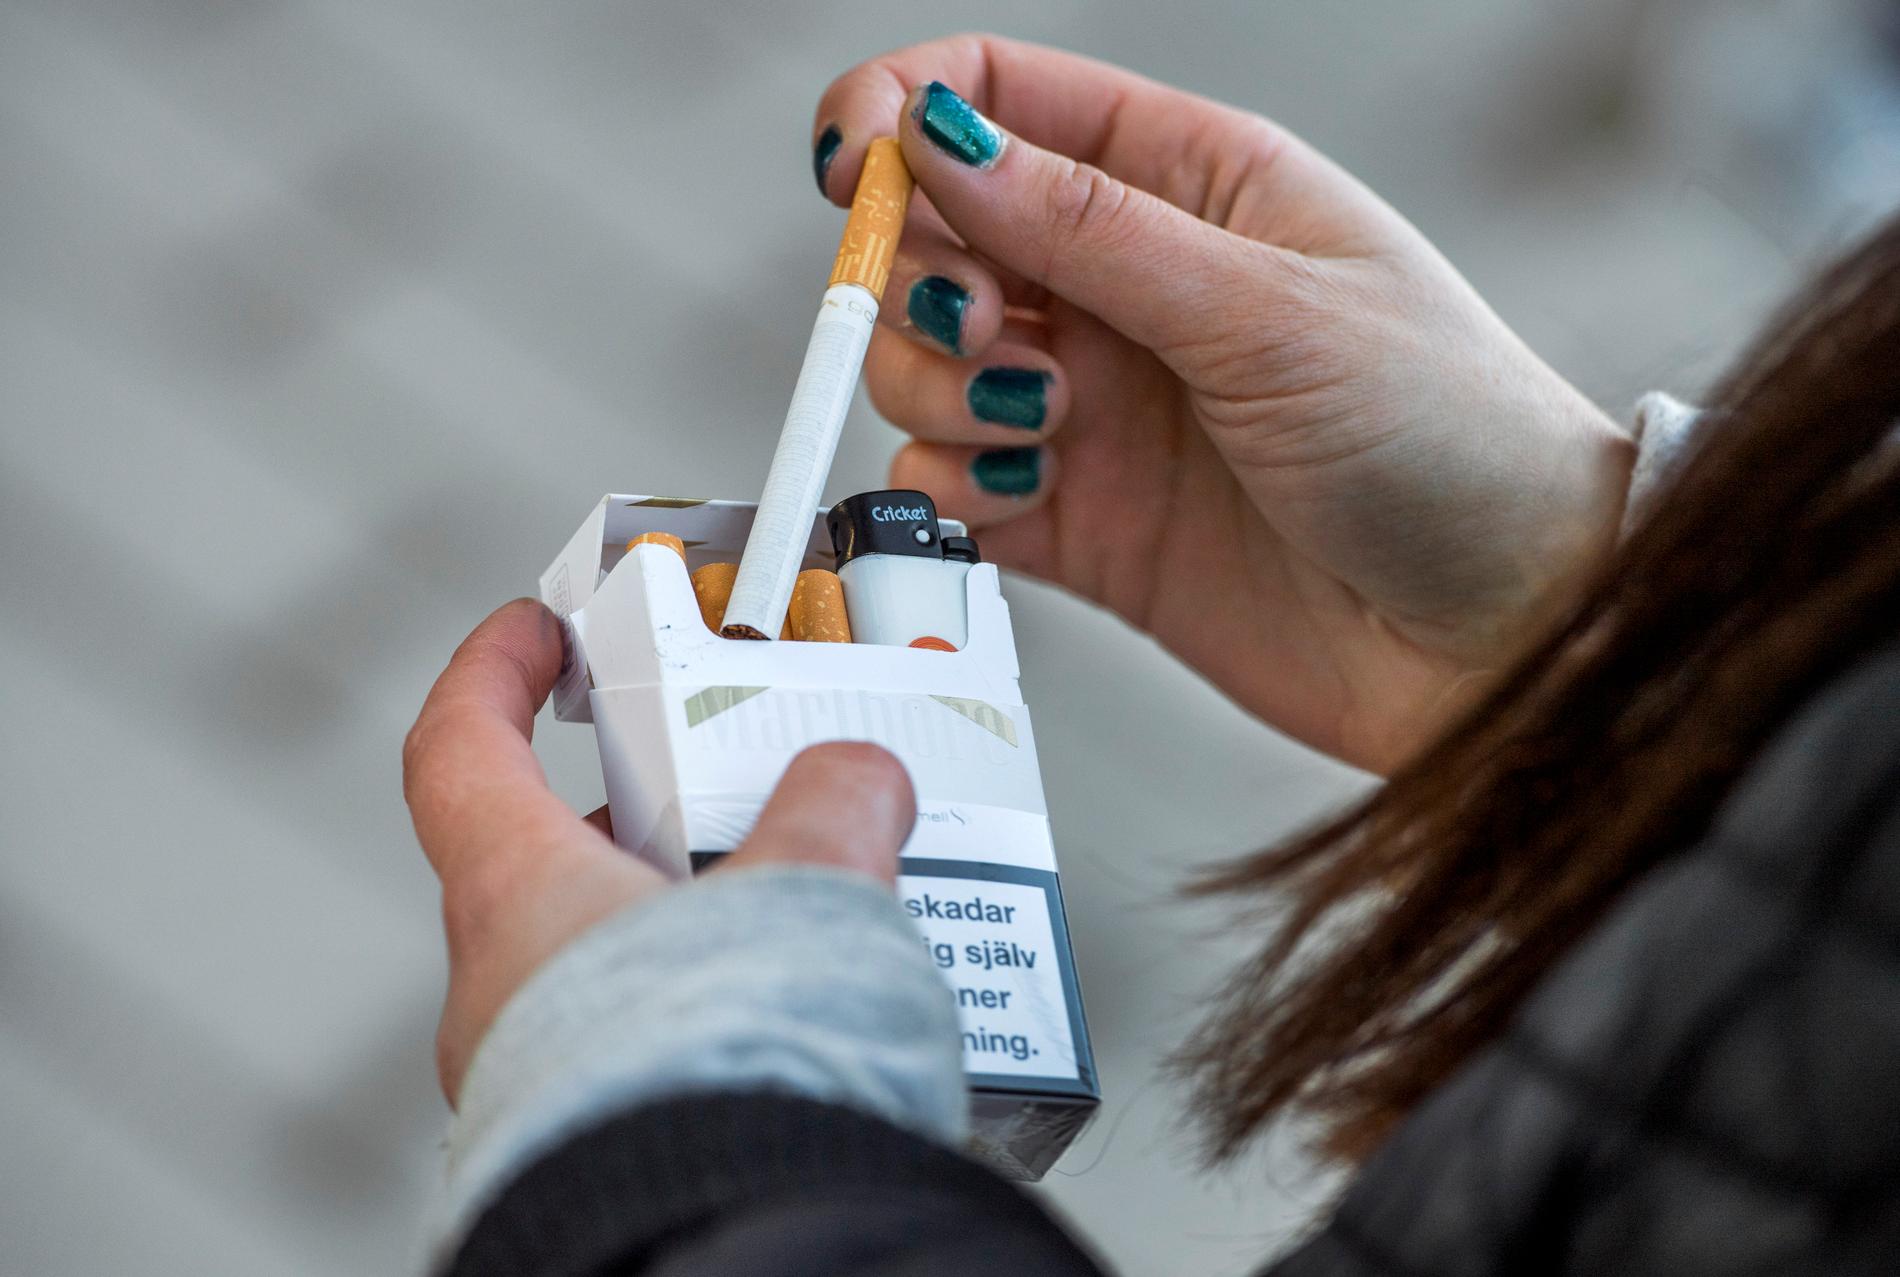 Nikotin gör rökaren beroende av tobak. Men nikotinets påverkan av hjärnan kan försvinna om man lär sig en ny motorisk aktivitet, visar svensk forskning på råttor. Arkivbild.